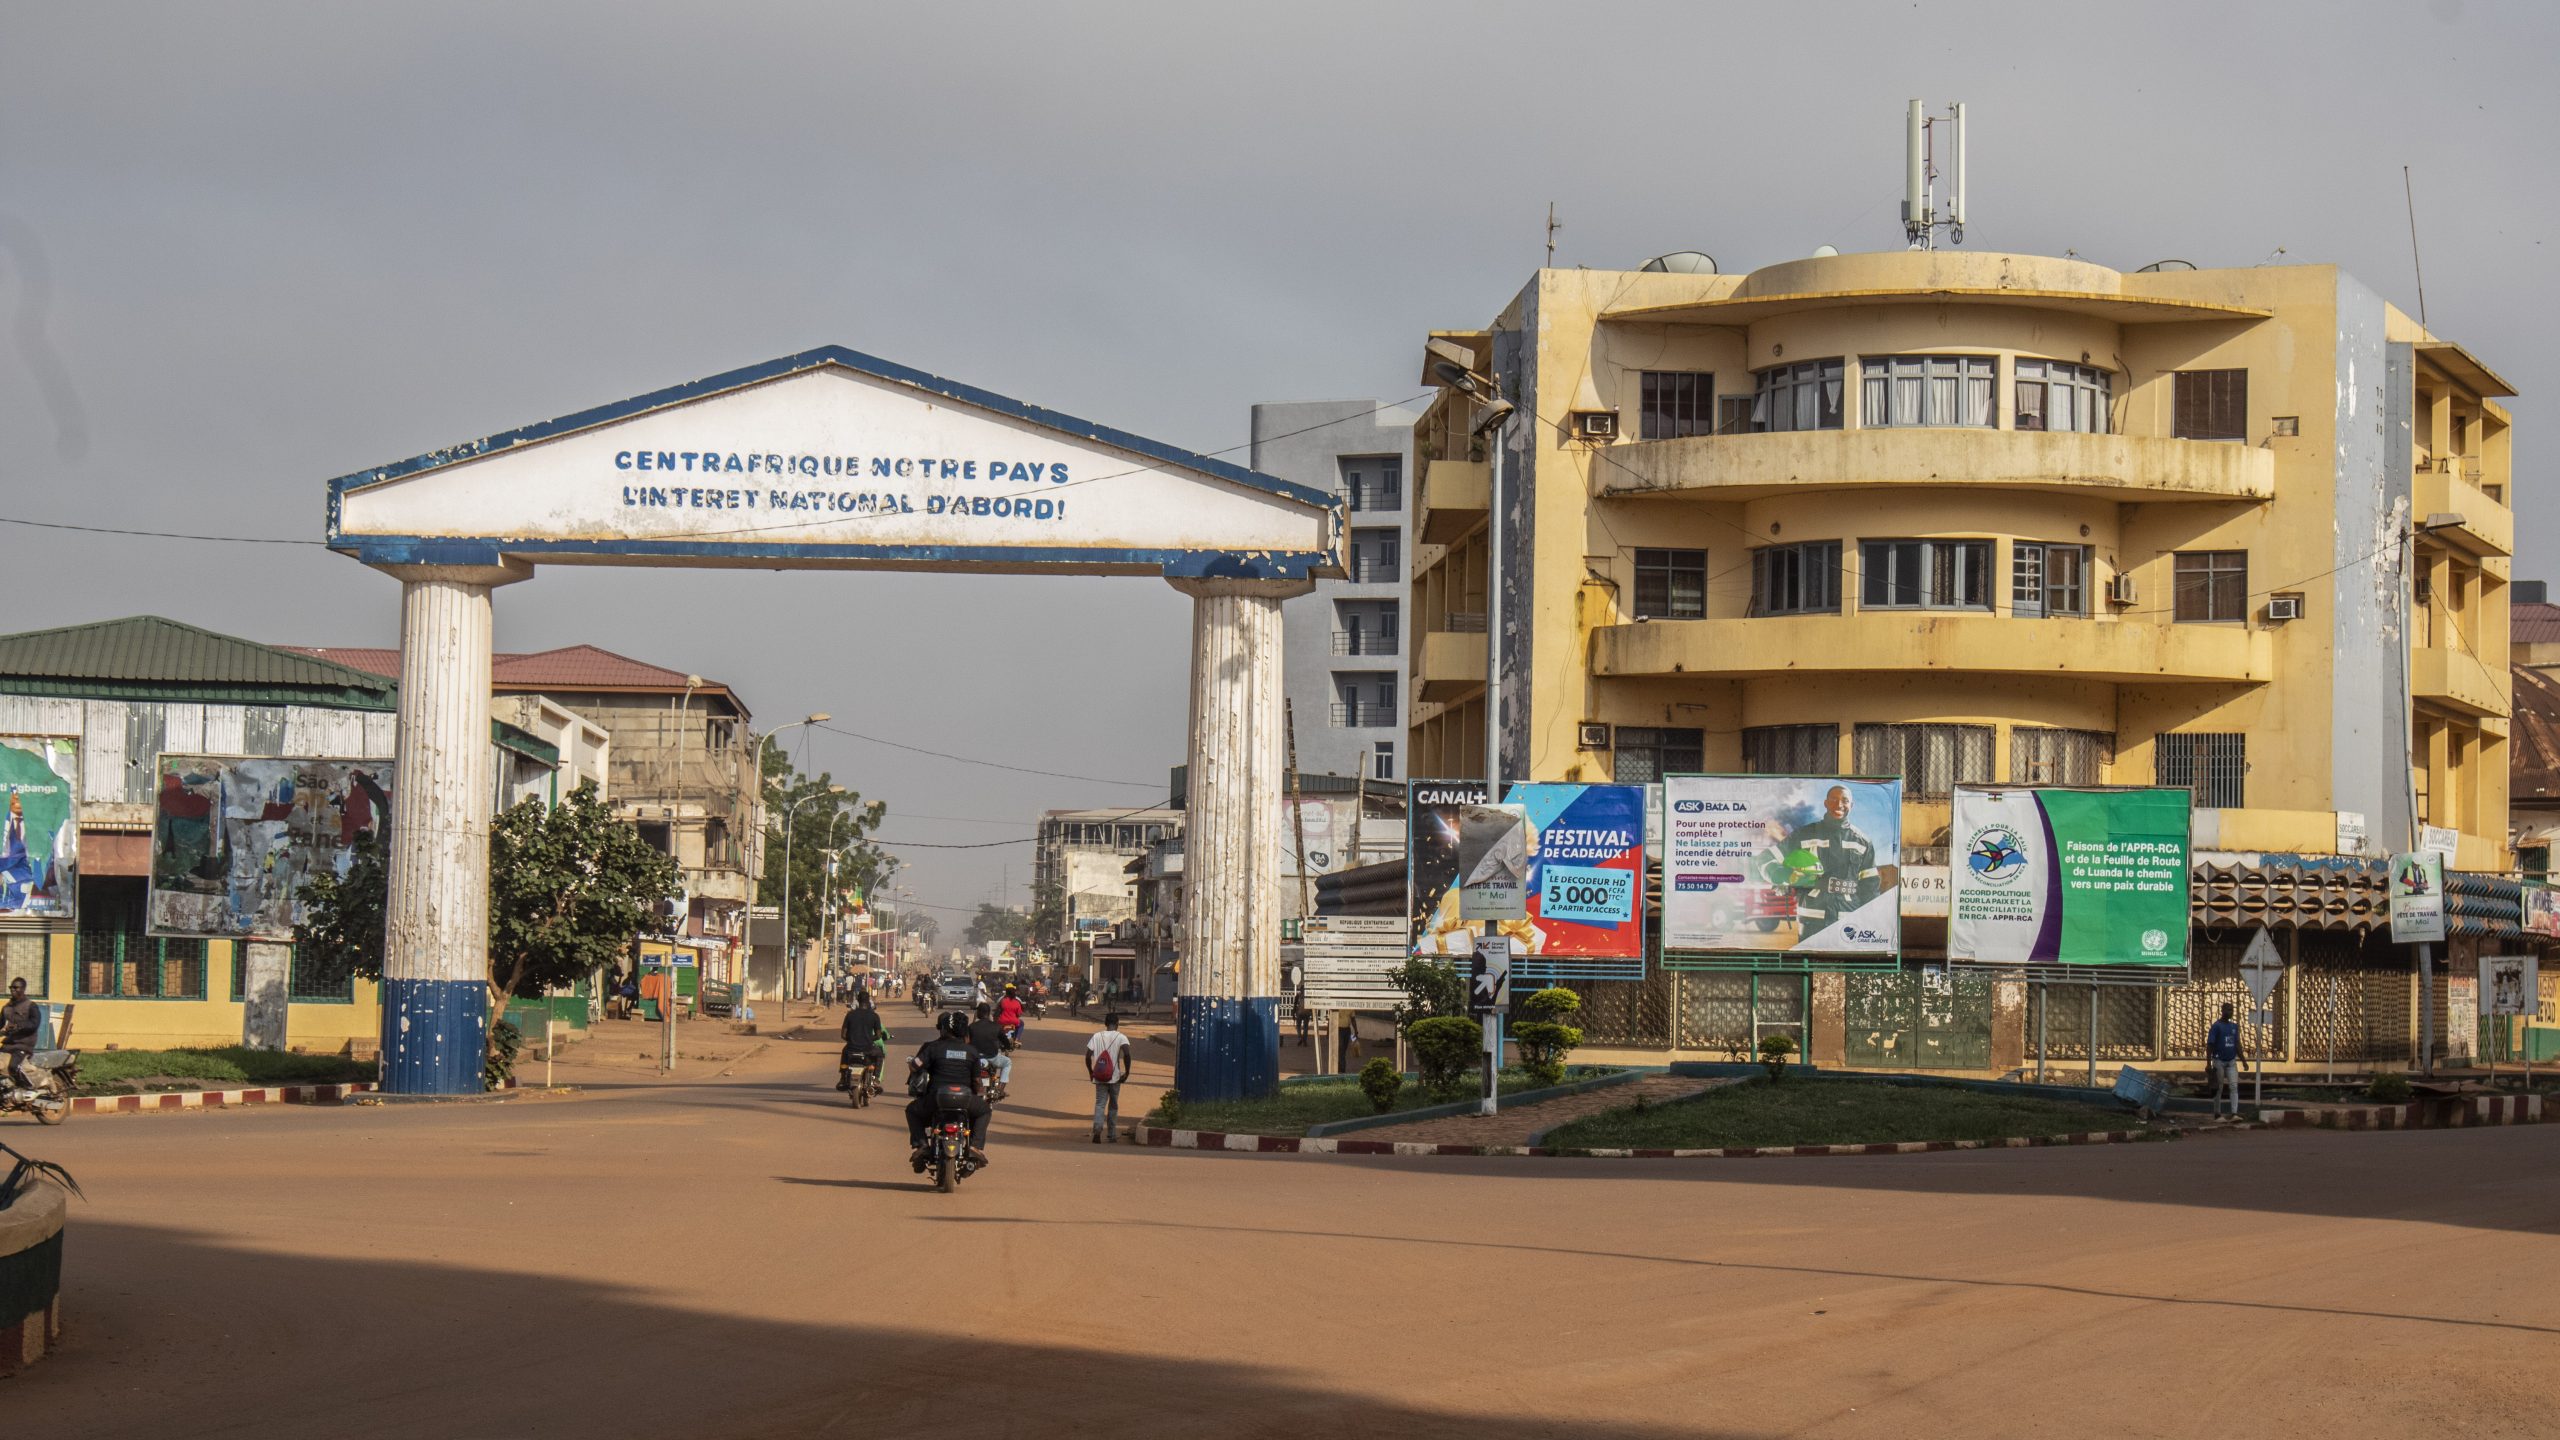 Centrafrique : avis divergents dans les rues de Bangui suite au mandat d’arrêt international contre François Bozizé